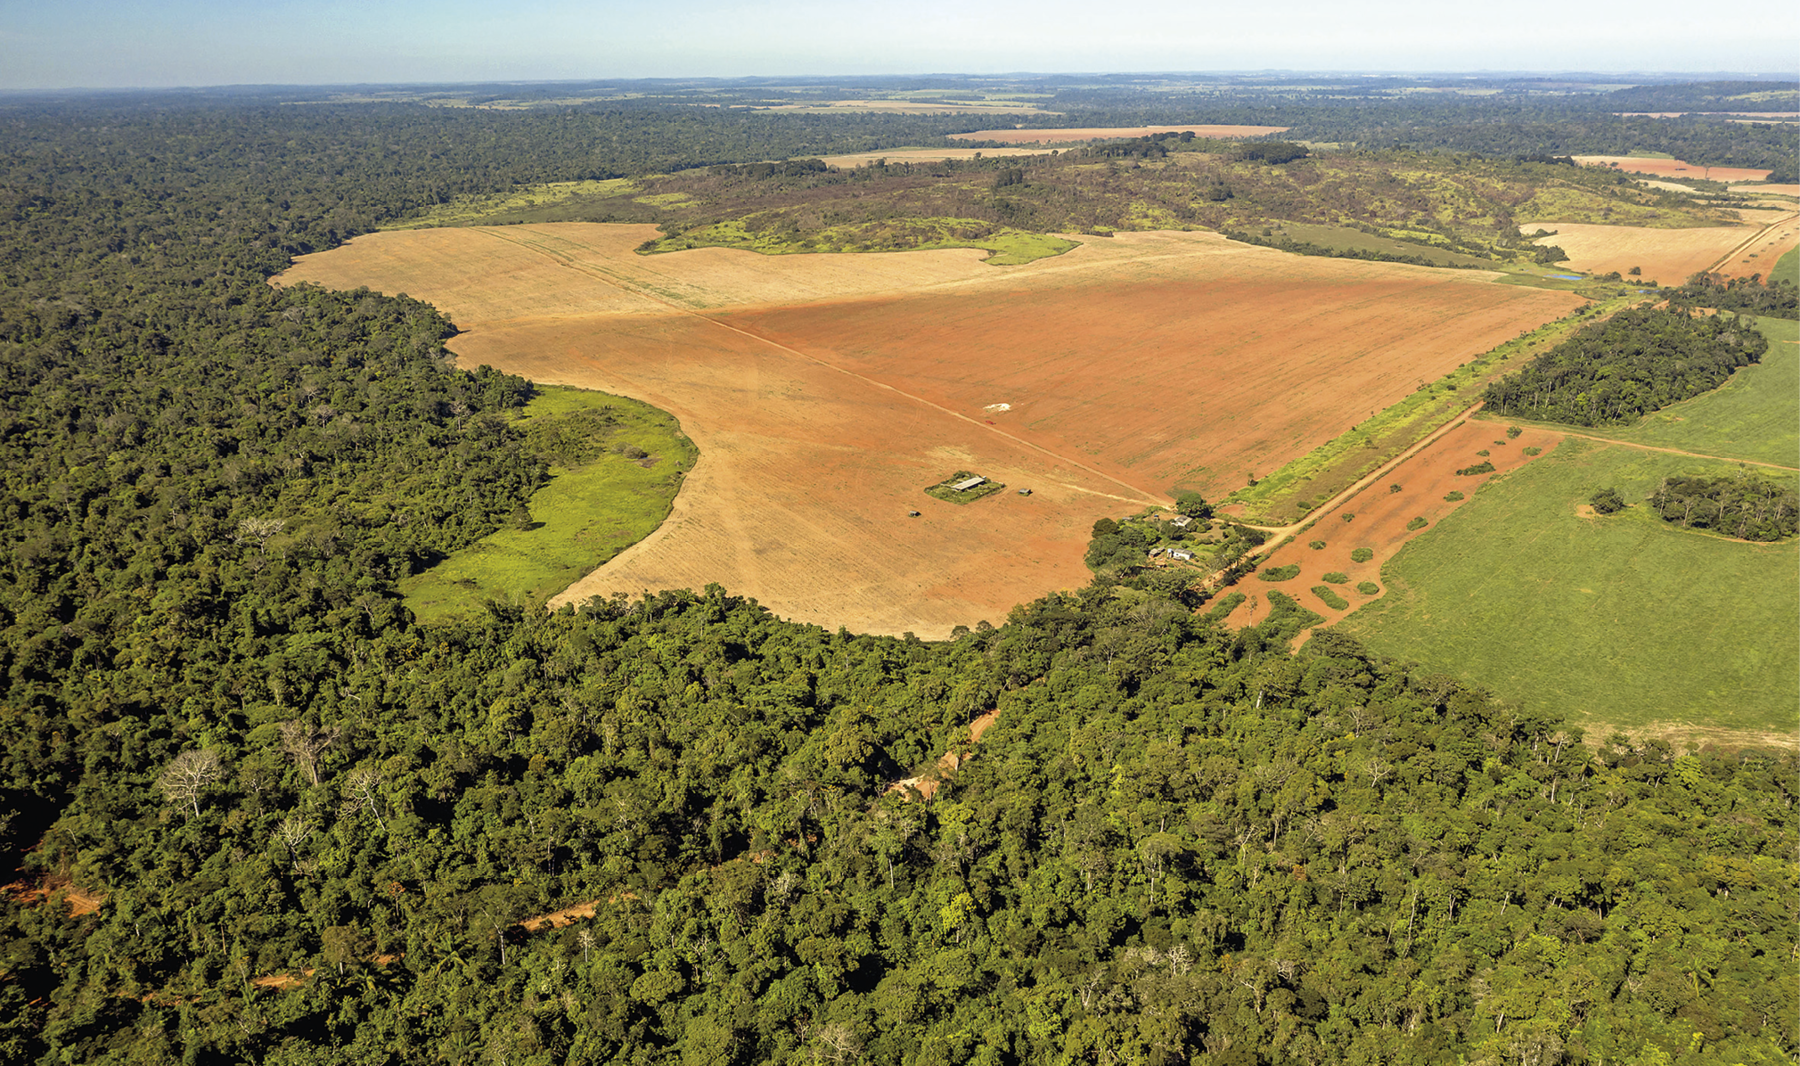 Fotografia. Vista de uma extensa área de floresta densa, plana e verde. No centro da foto, há uma grande área com solo exposto, na cor marrom clara. No lado direito, há uma área com grama.